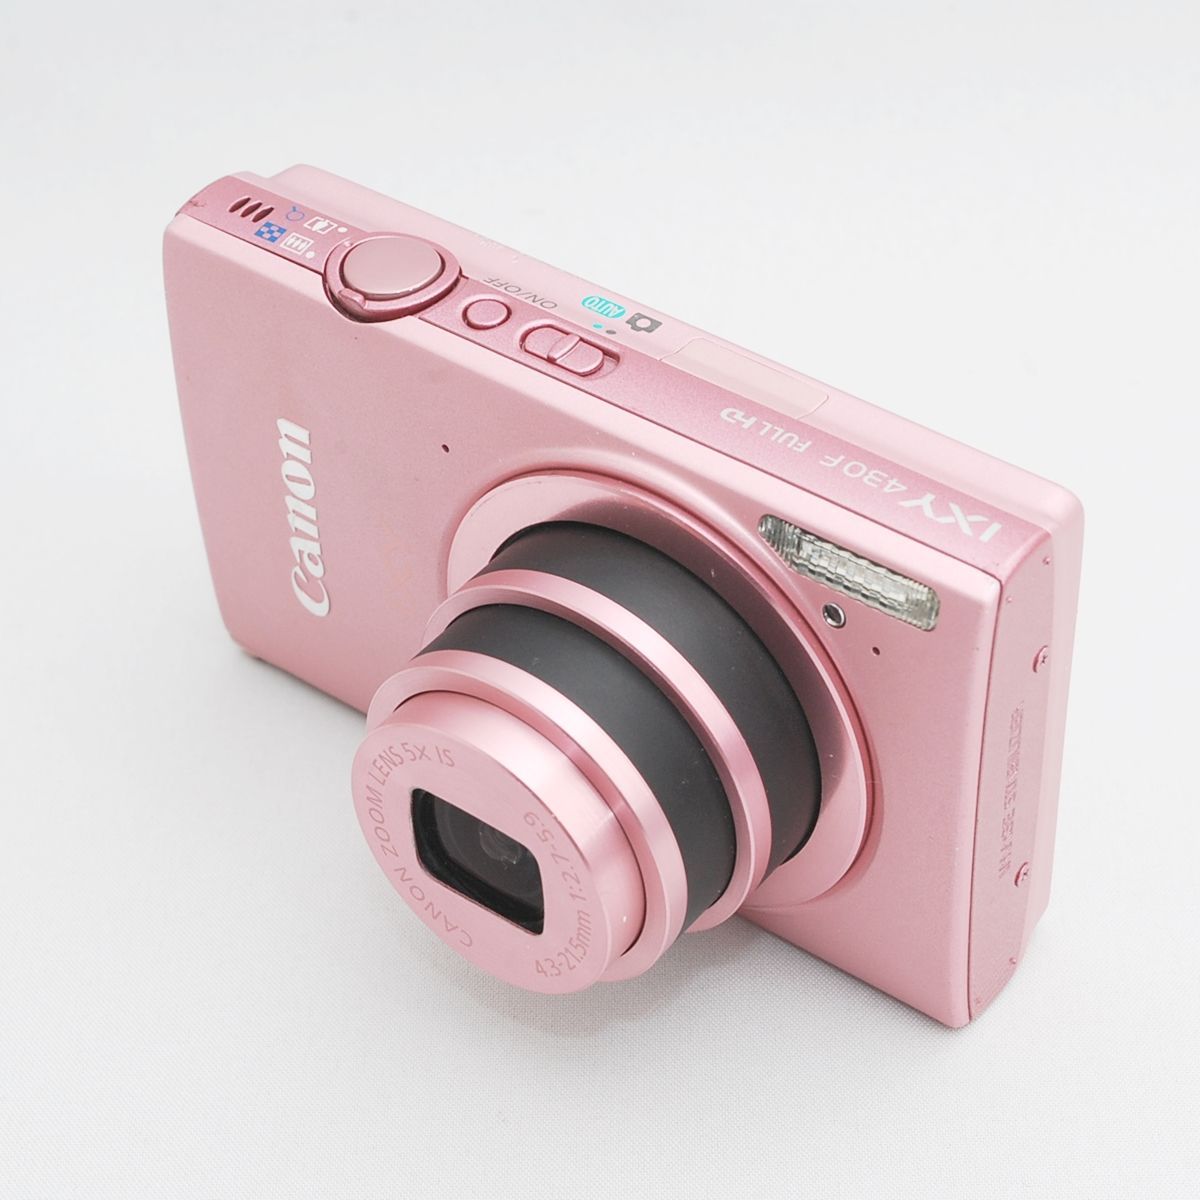 Canon デジタルカメラ IXY 430F ピンク 1600万画素 光学5倍ズーム Wi ...